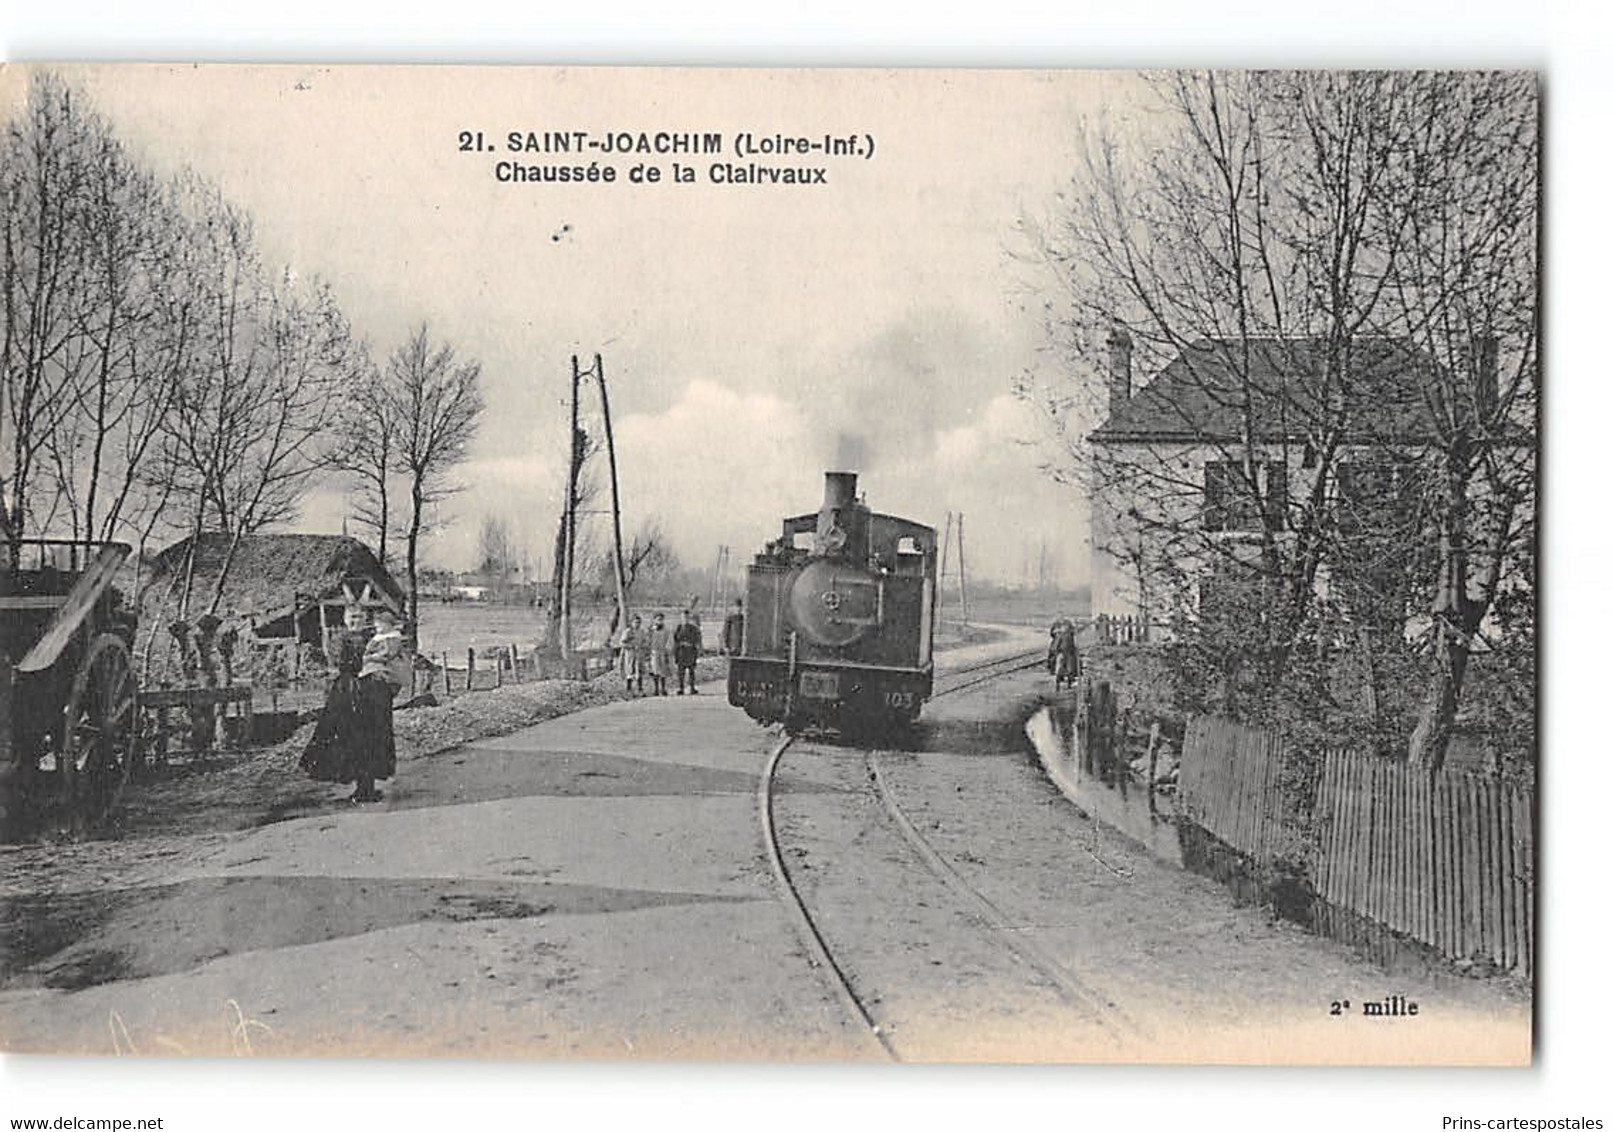 Lot de 50 cpa France - Theme Chemins de Fer - Trains - Tramways